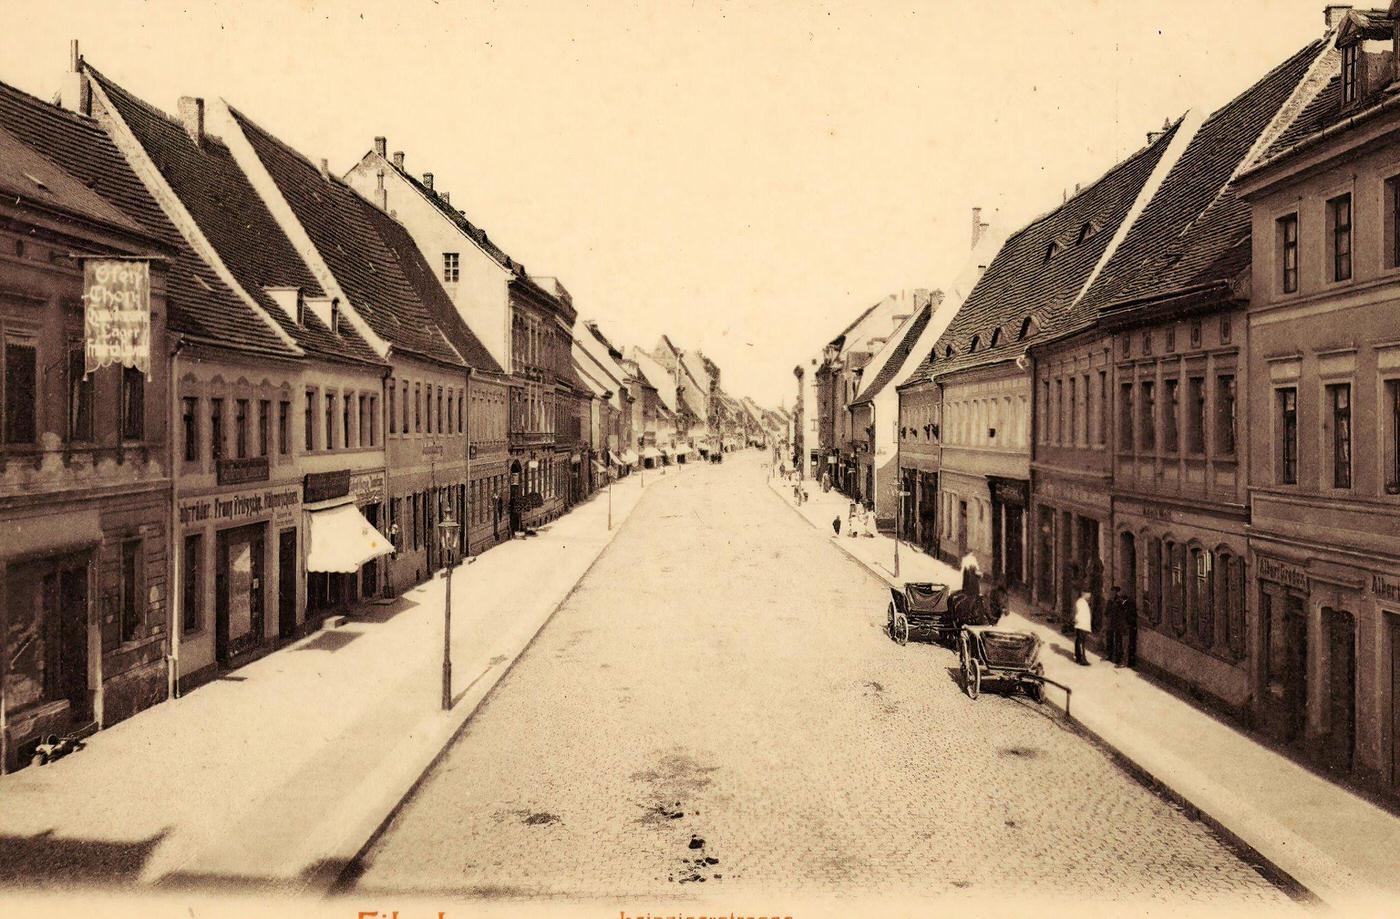 Leiterwagen, Eilenburg, Germany, 1903.